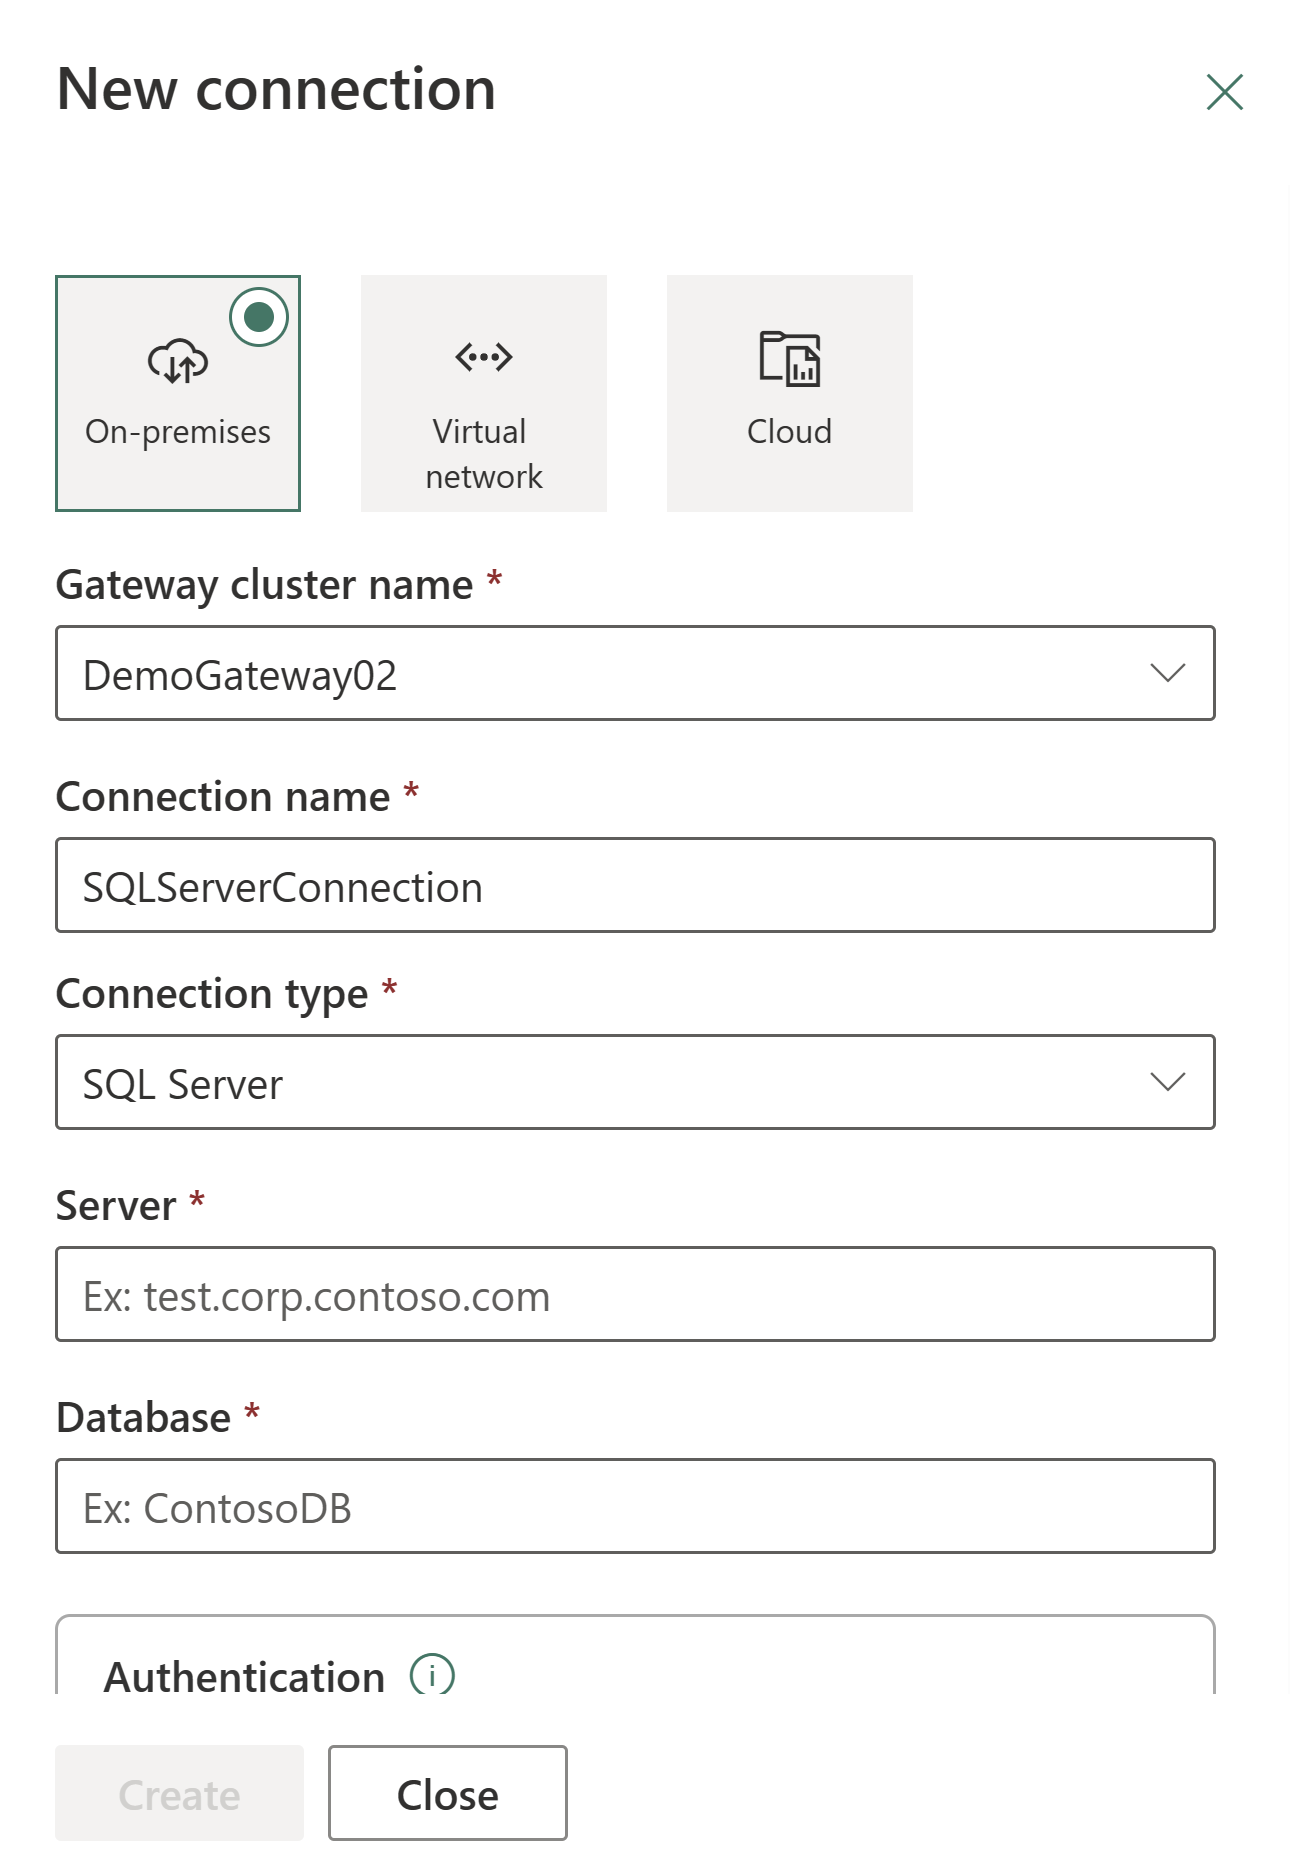 Captura de tela mostrando a caixa de diálogo Nova conexão com On-premises selecionada.